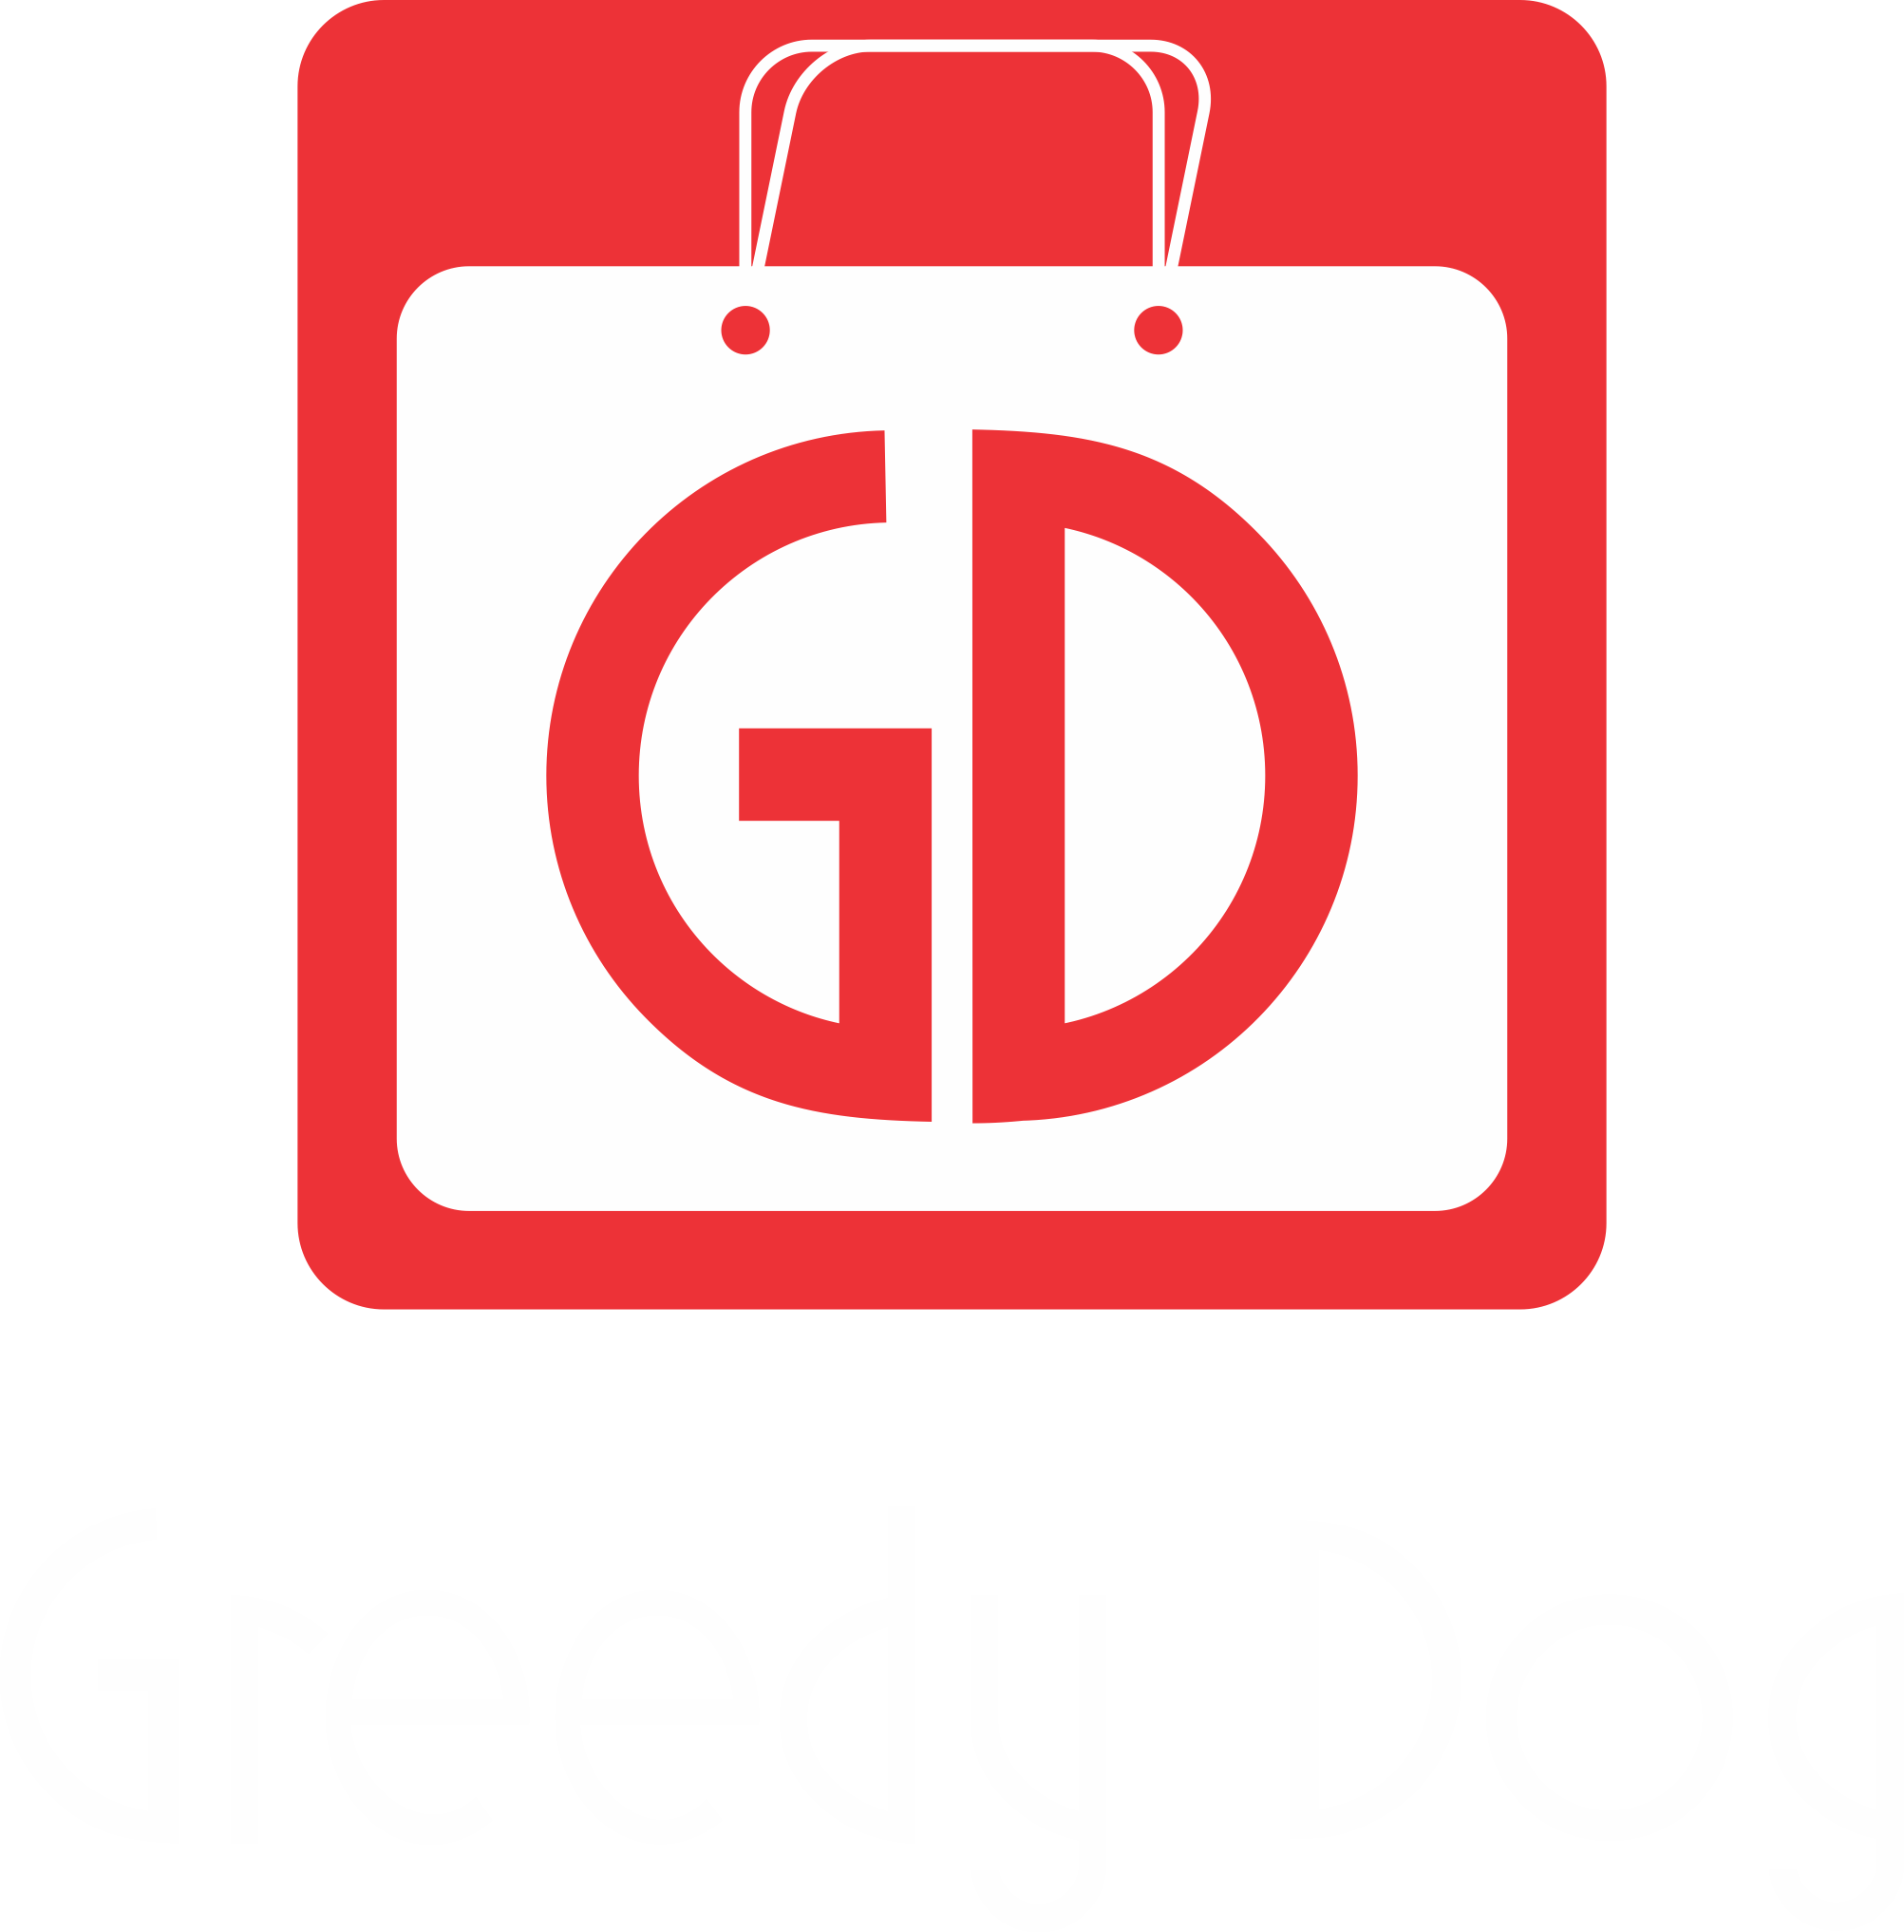 Greedy Dog Branding